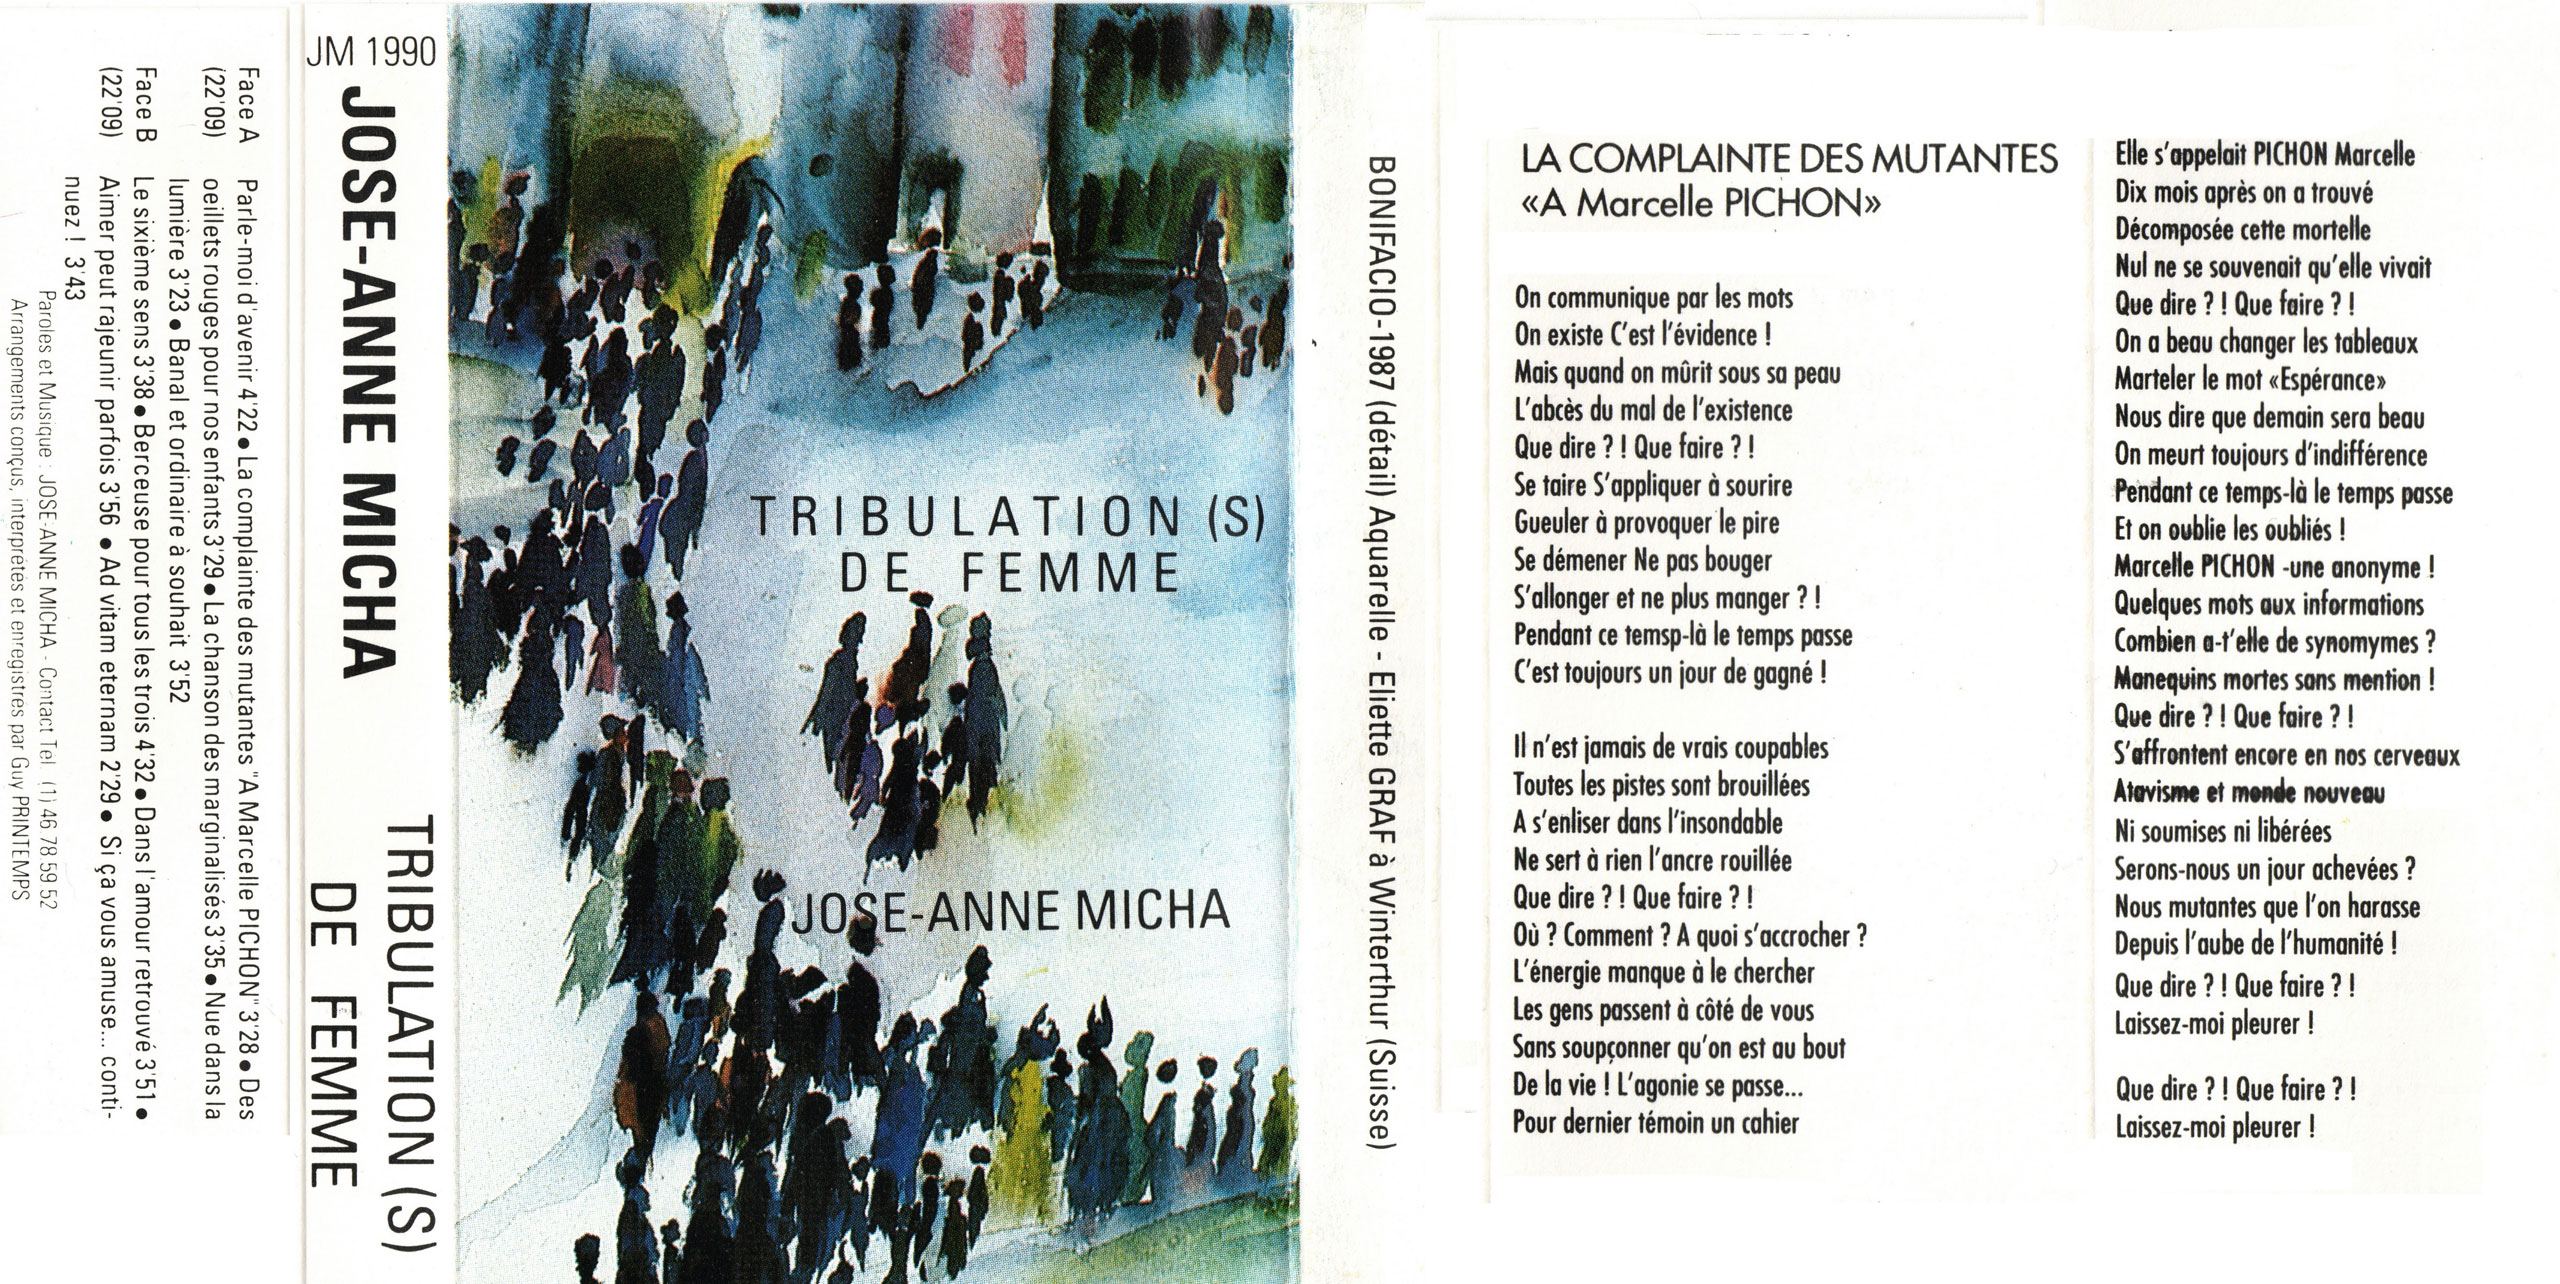 Jaquette de la cassette de l’album « Tribulation(s) de femme », sur lequel figure La Complainte des mutantes, avec les paroles de la chanson. (© Micha) <br><br>